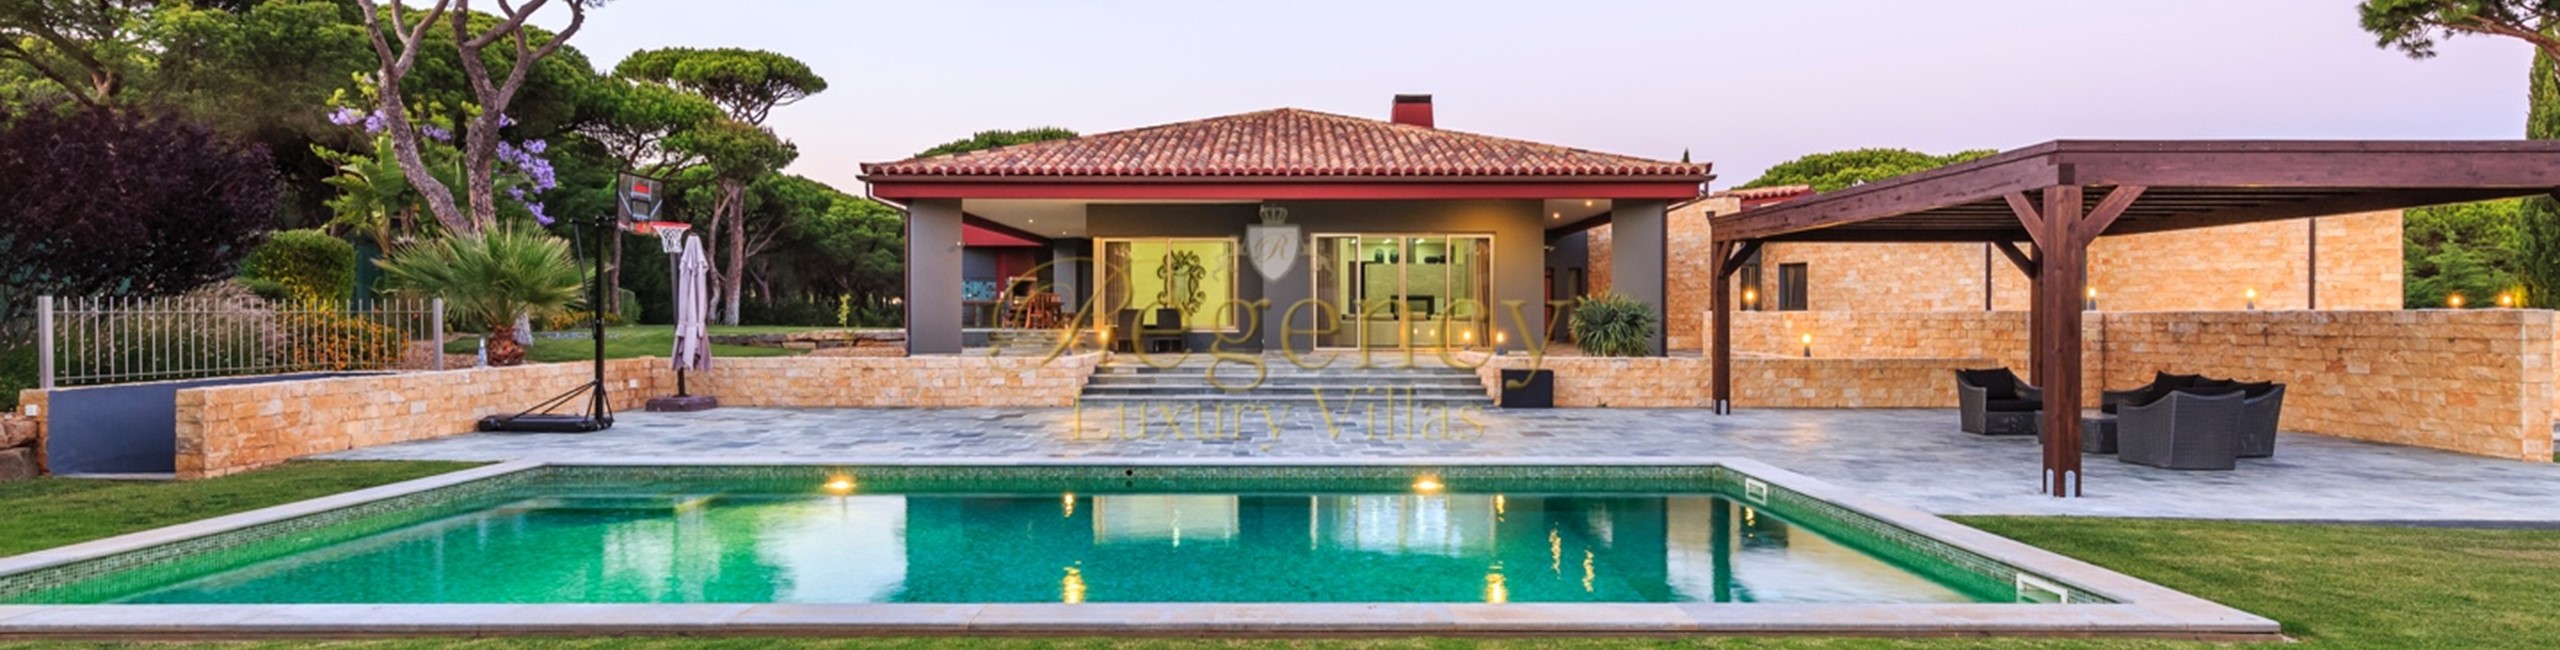 6 Bedroom Villa To Rent In Vilamoura Regency Luxury Villas